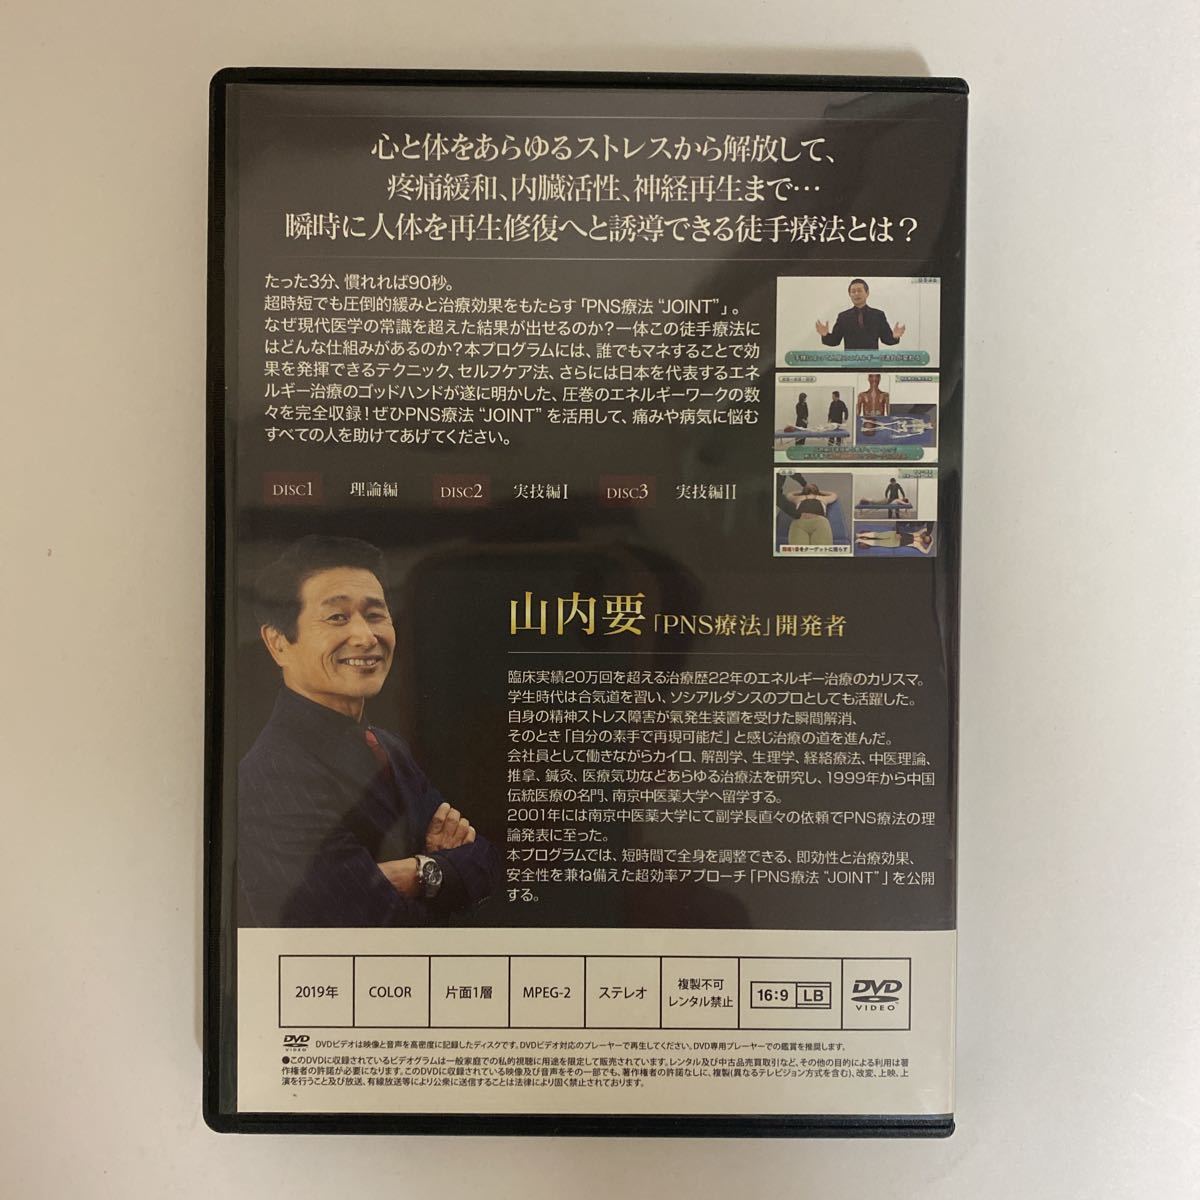 24時間以内発送 整体DVD計4枚【プラシーボナビゲートシステム JOINT